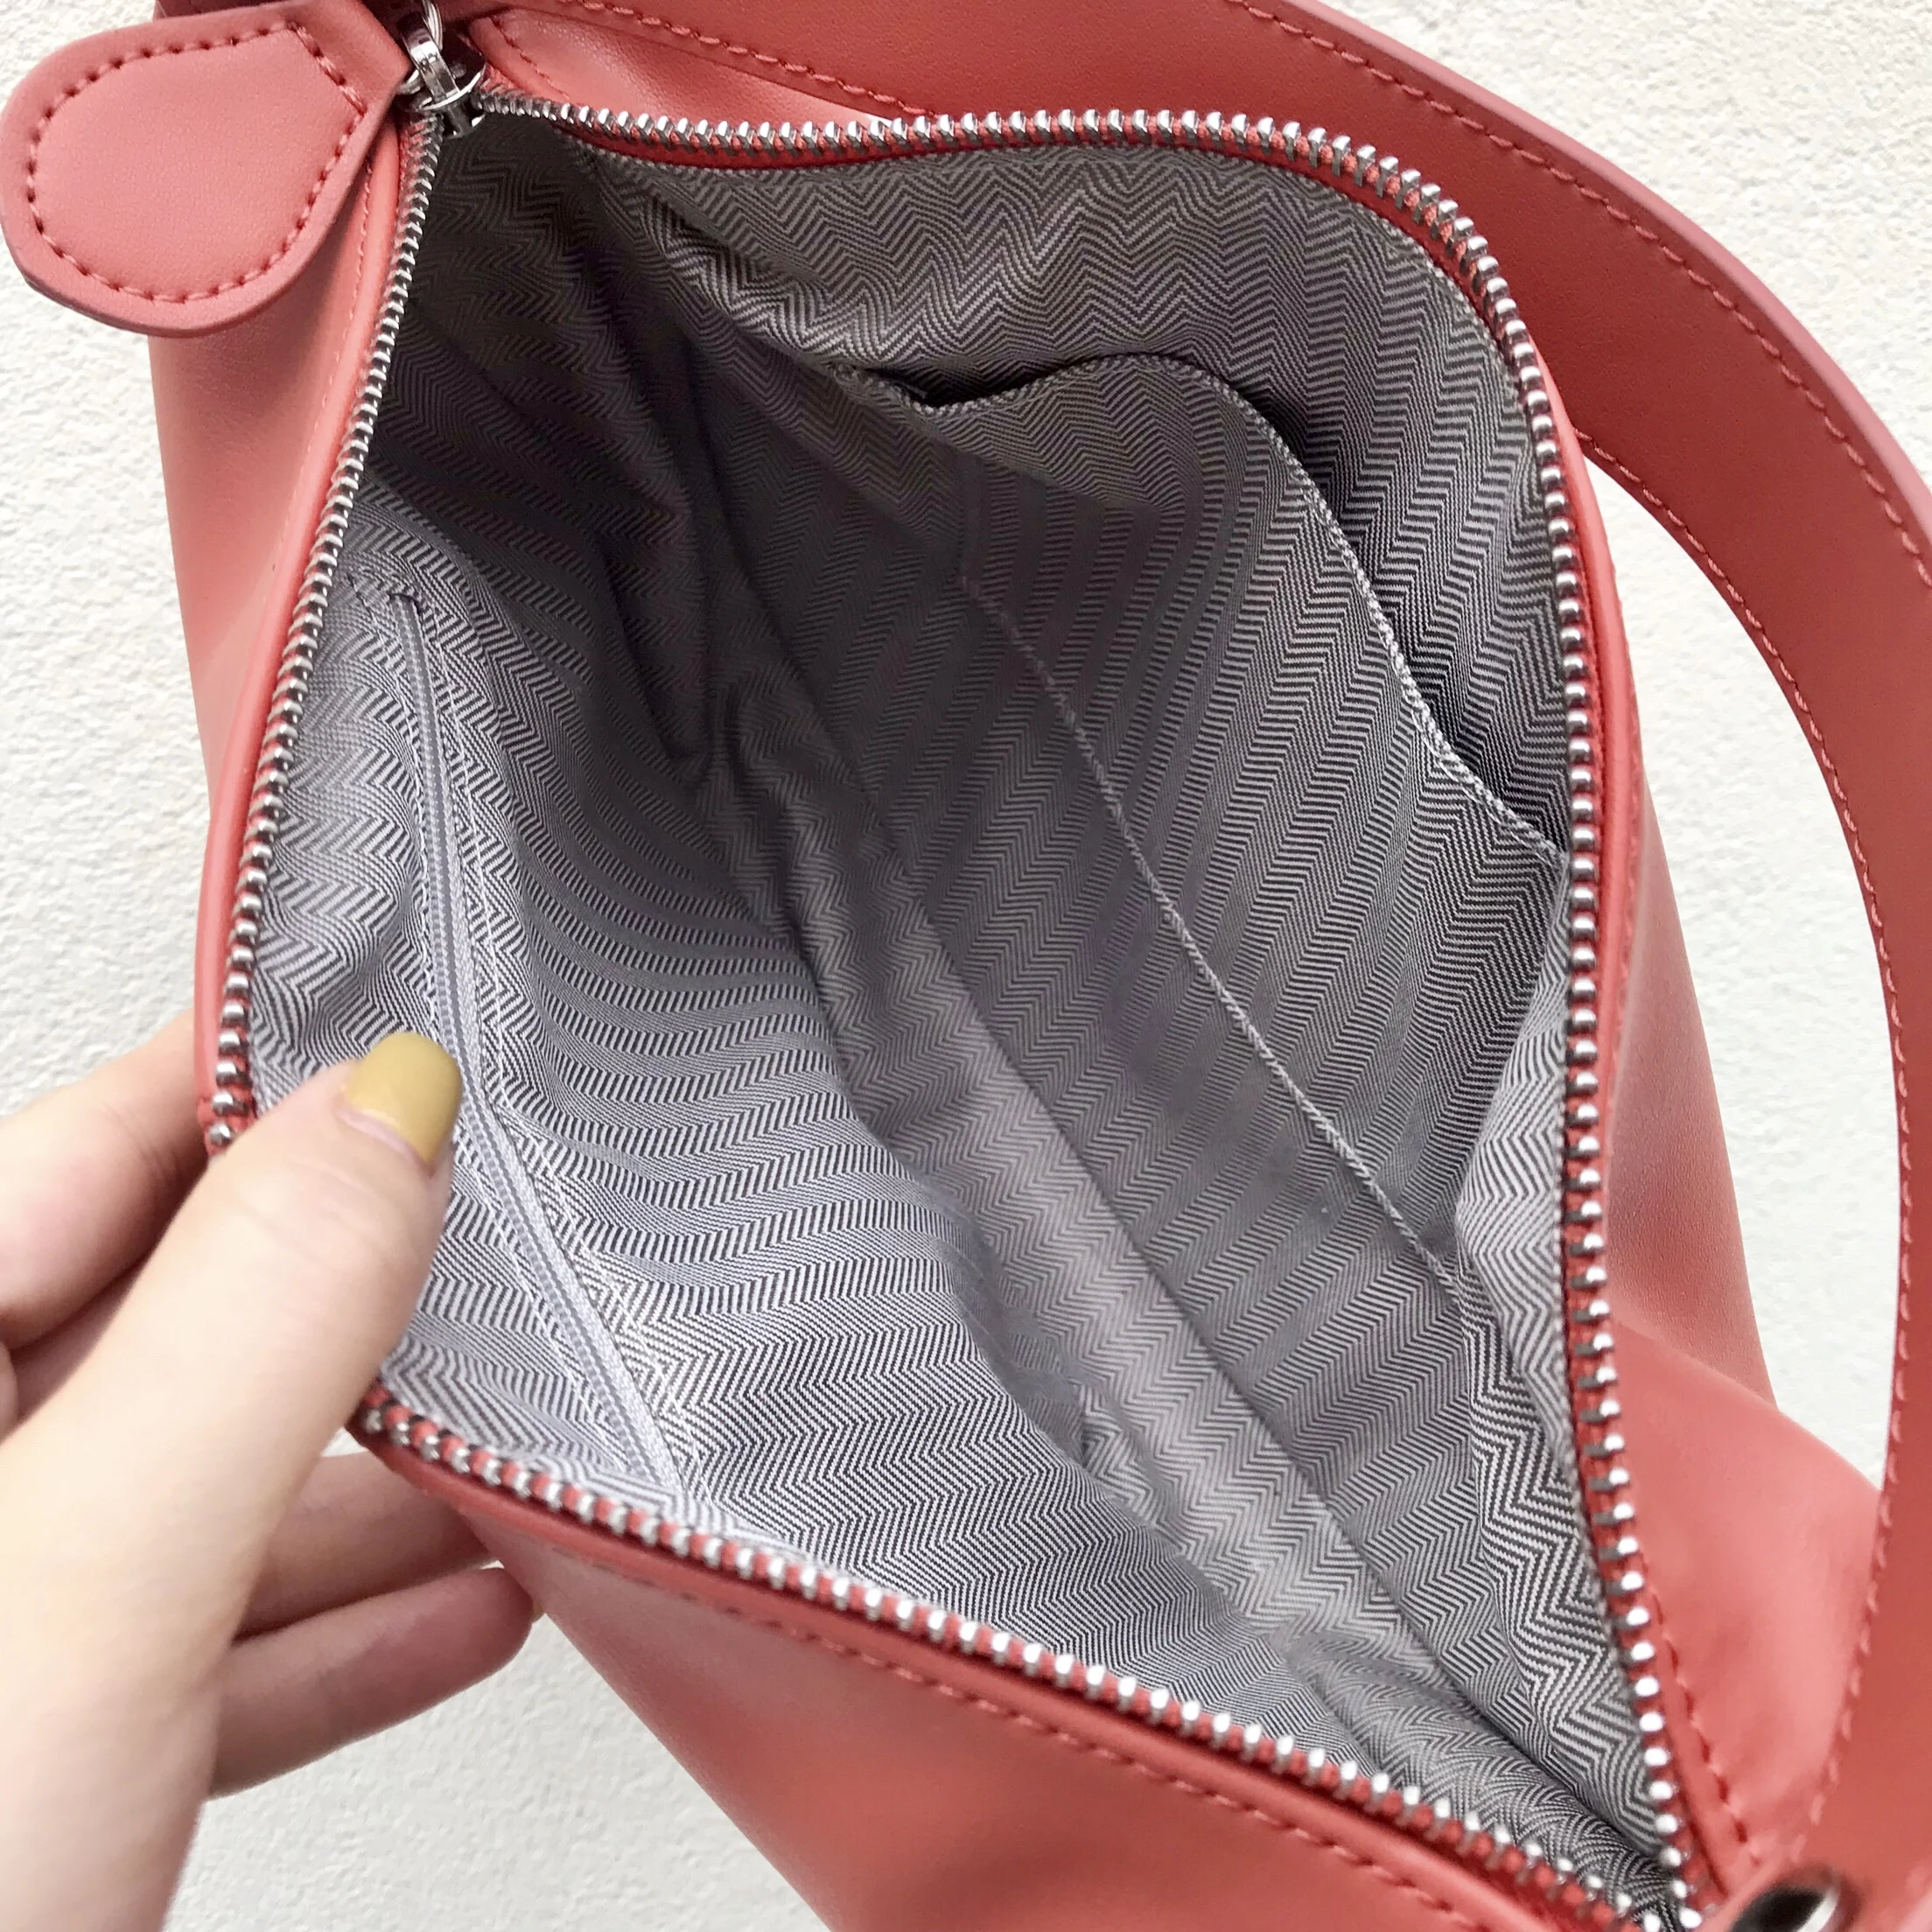 Kafunila роскошные сумки женские сумки дизайнерская сумка через плечо Женская Натуральная кожа известный бренд soulder сумка bolsa feminina